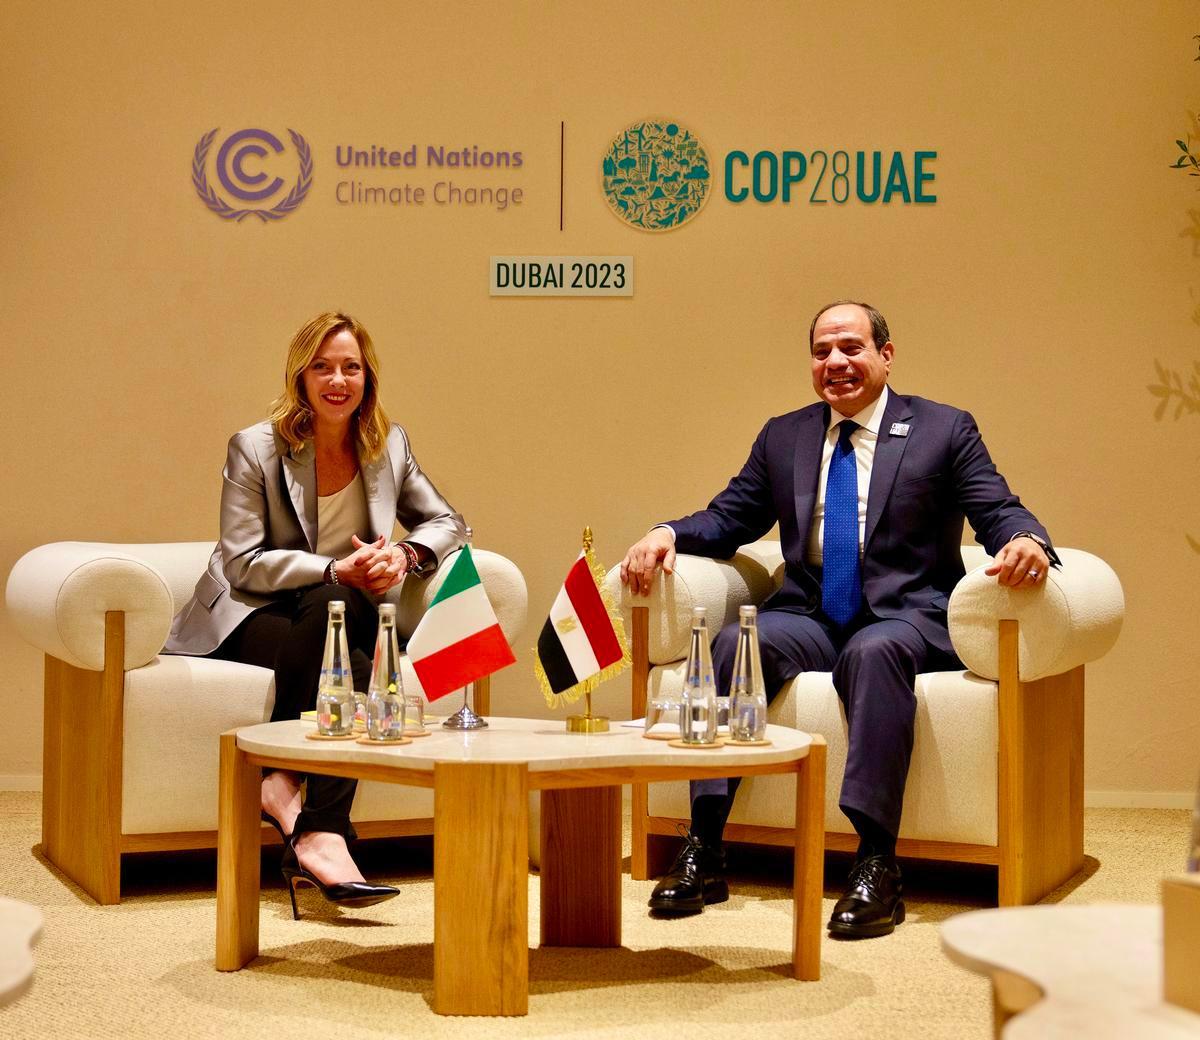 2 dicembre 2023, Dubai. La presidente del Consiglio Giorgia Meloni insieme al presidente egiziano Abdel-Fattah al-Sisi durante un incontro alla Cop28